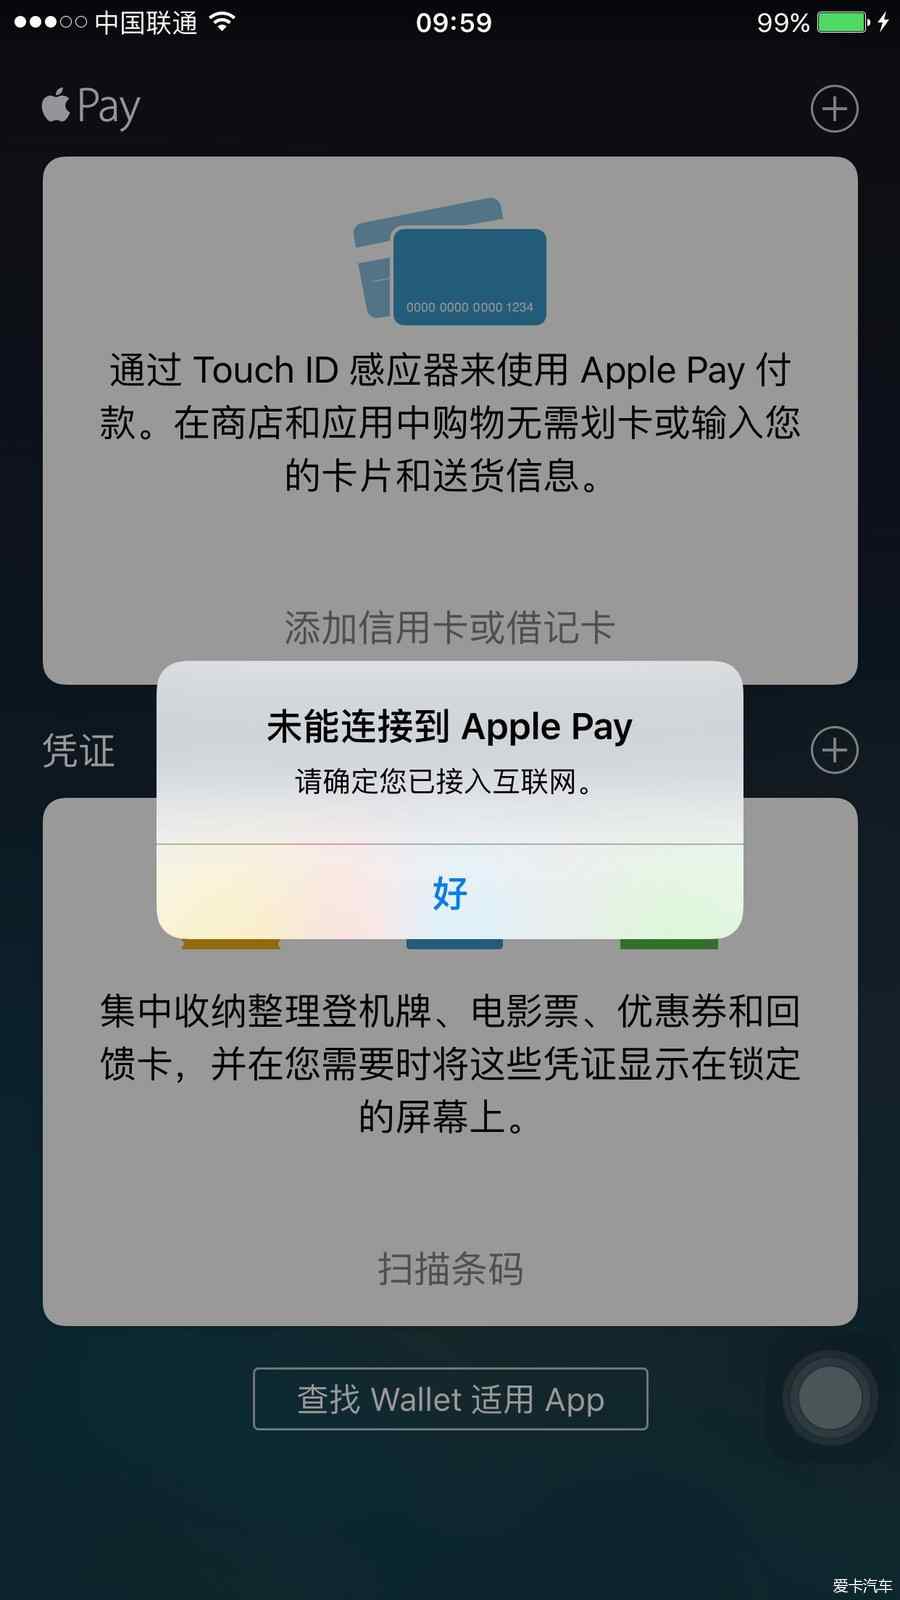 未能连接到Apple Pay?这是什么情况?